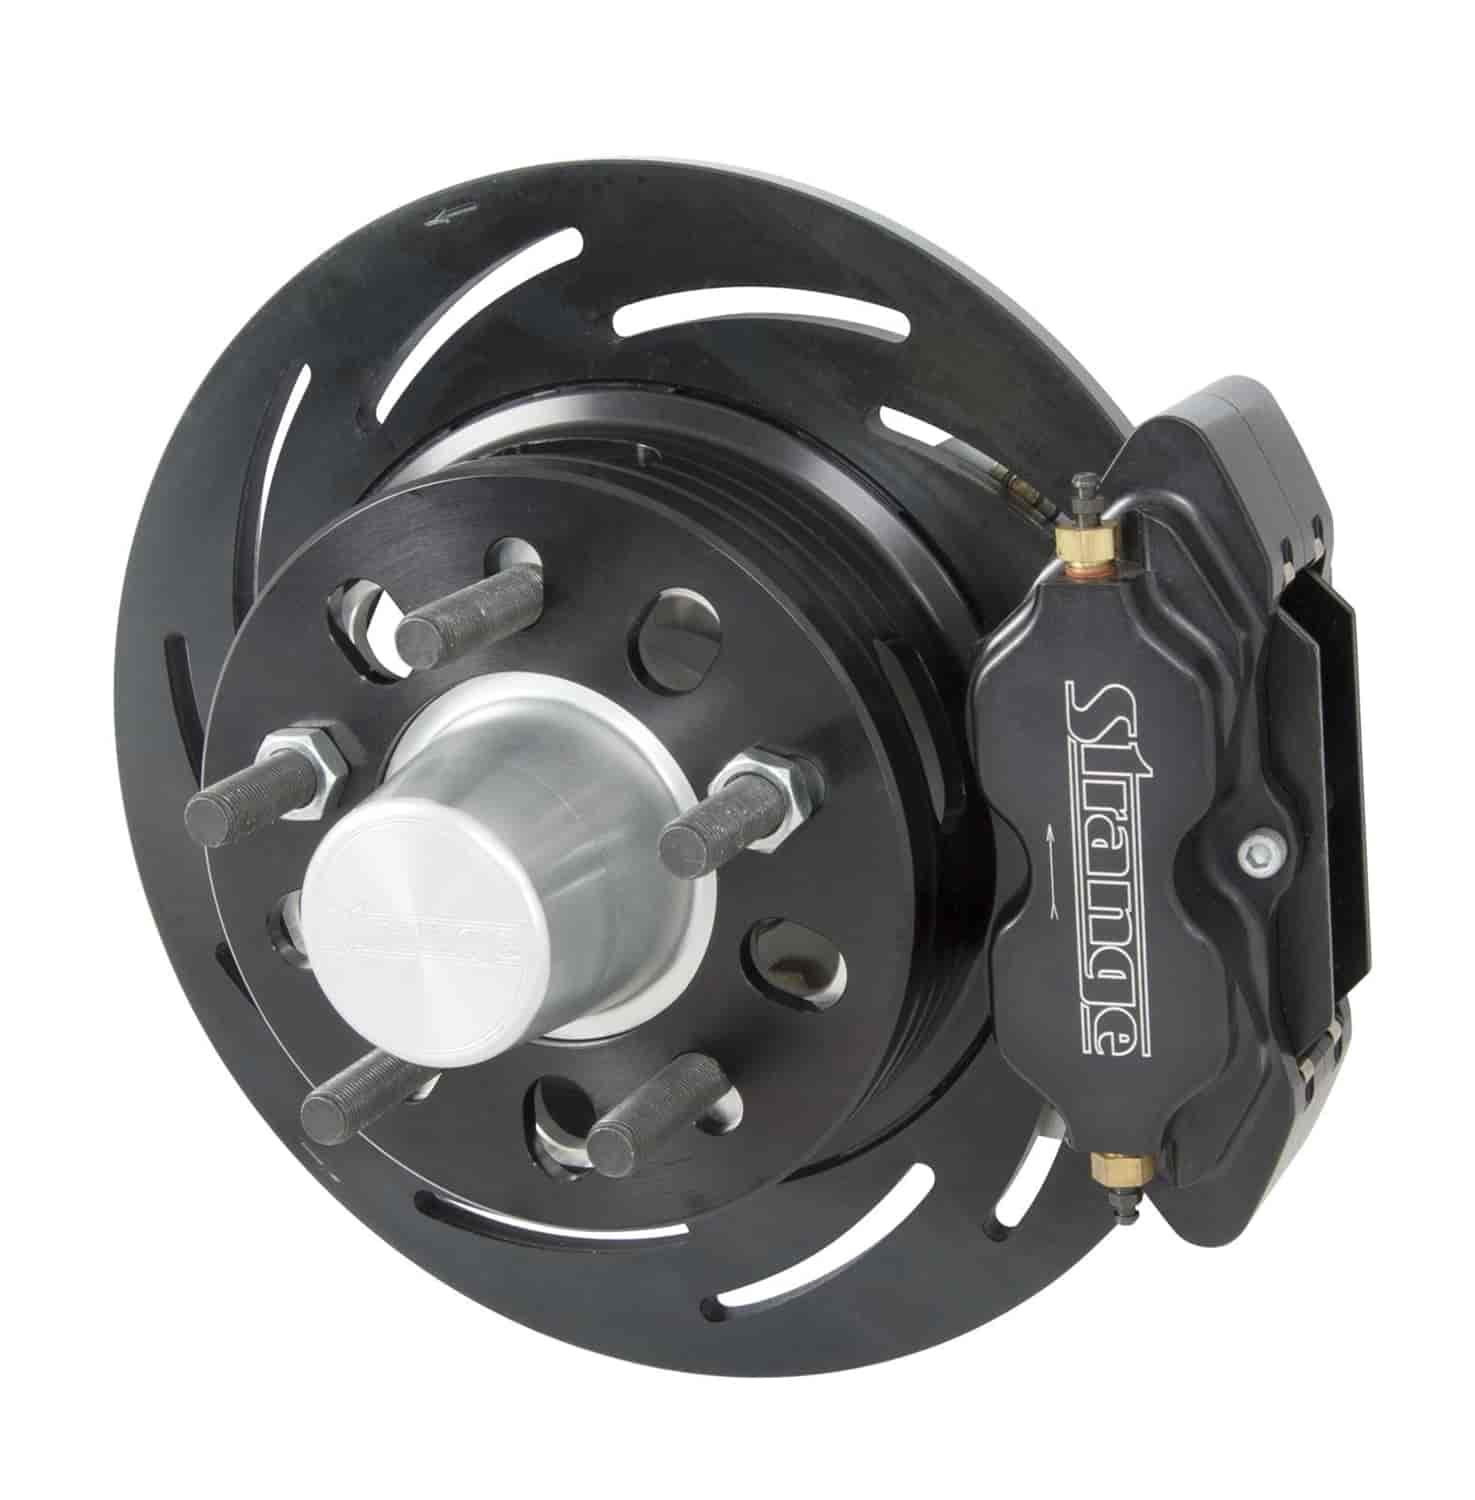 Front brake kit /GM drum spindles /4.75 bc /2 pc rotor